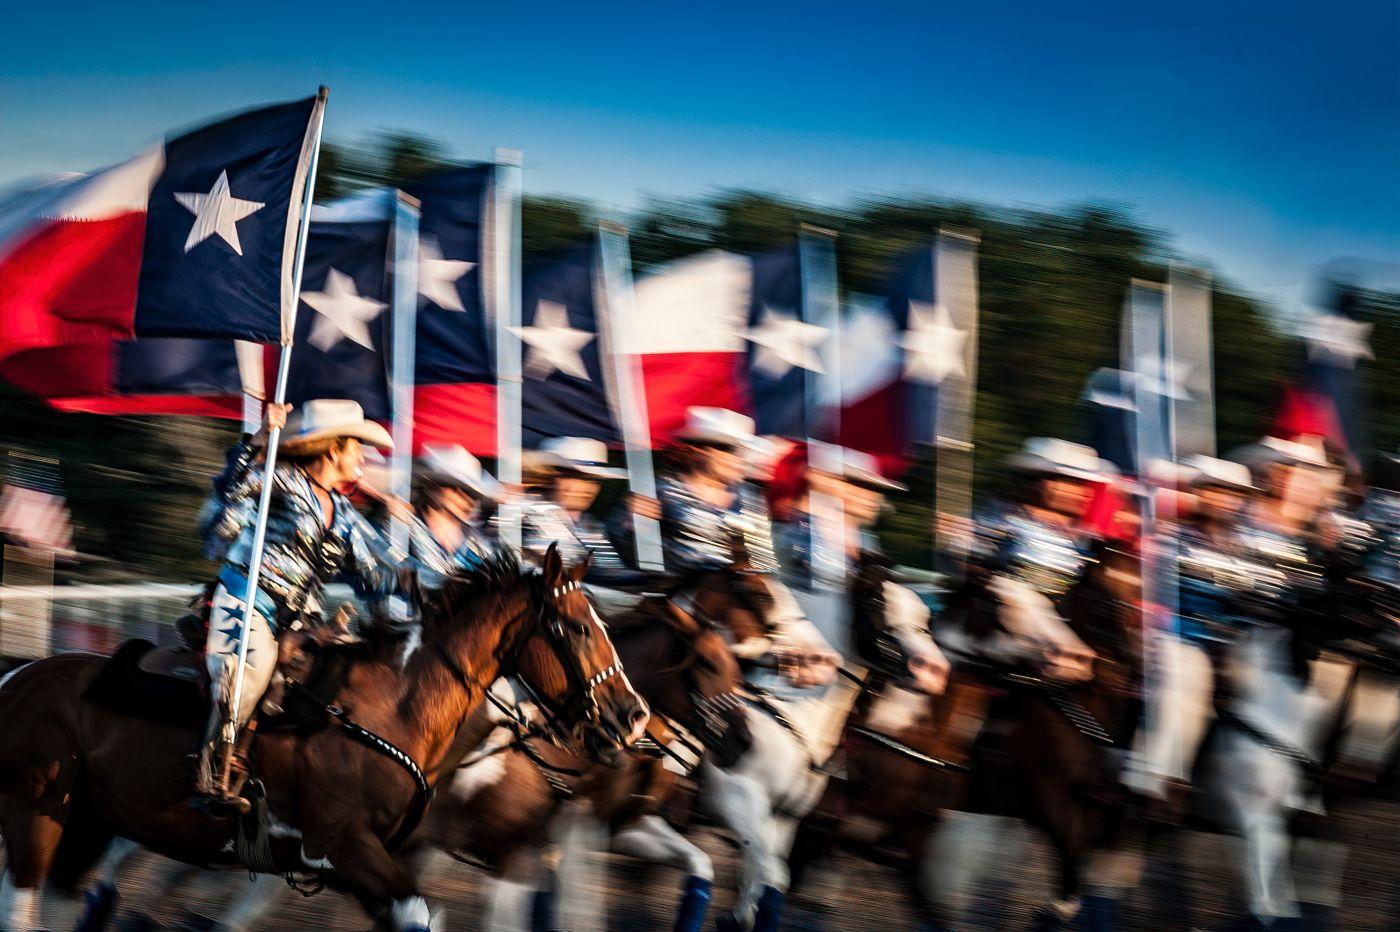 Alan Montgomery Color Photograph - Texas Our Texas - Texan rodeo cowboys horse parade w/ cowboy hats & Texan flag